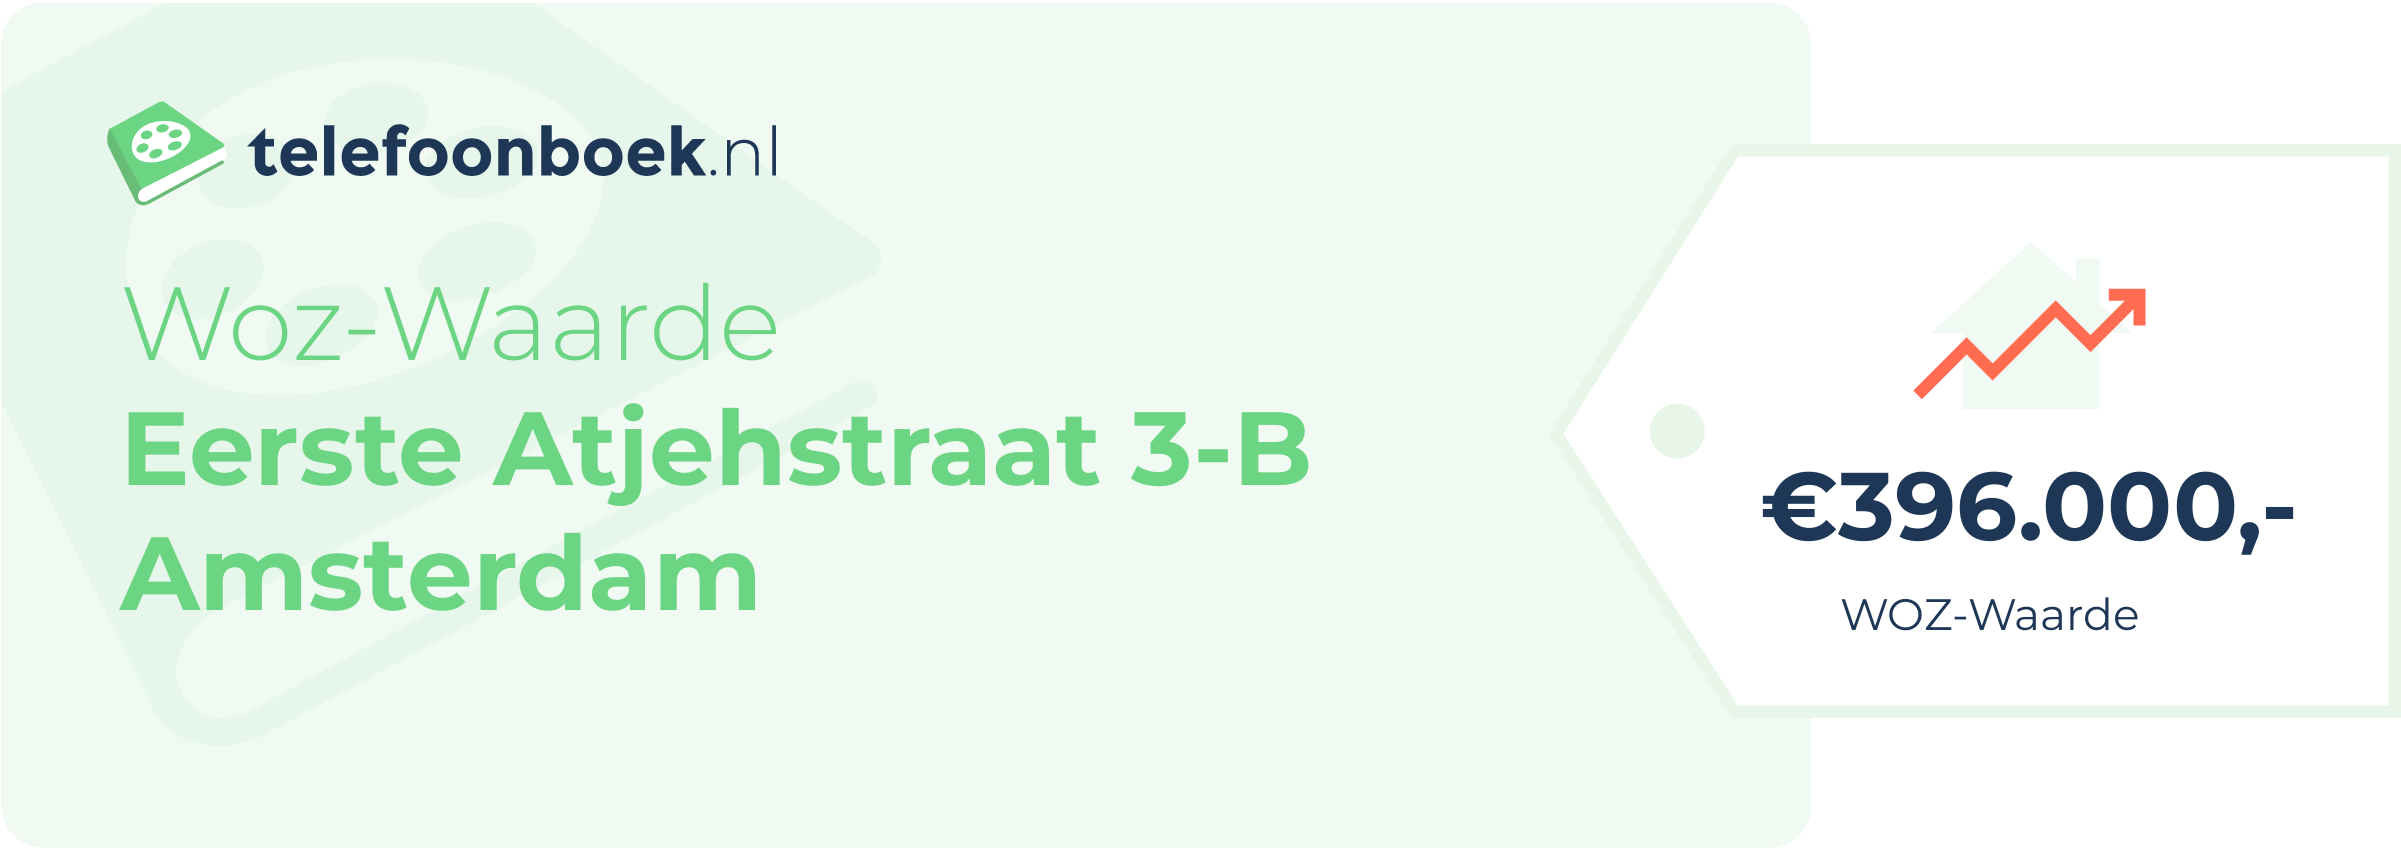 WOZ-waarde Eerste Atjehstraat 3-B Amsterdam